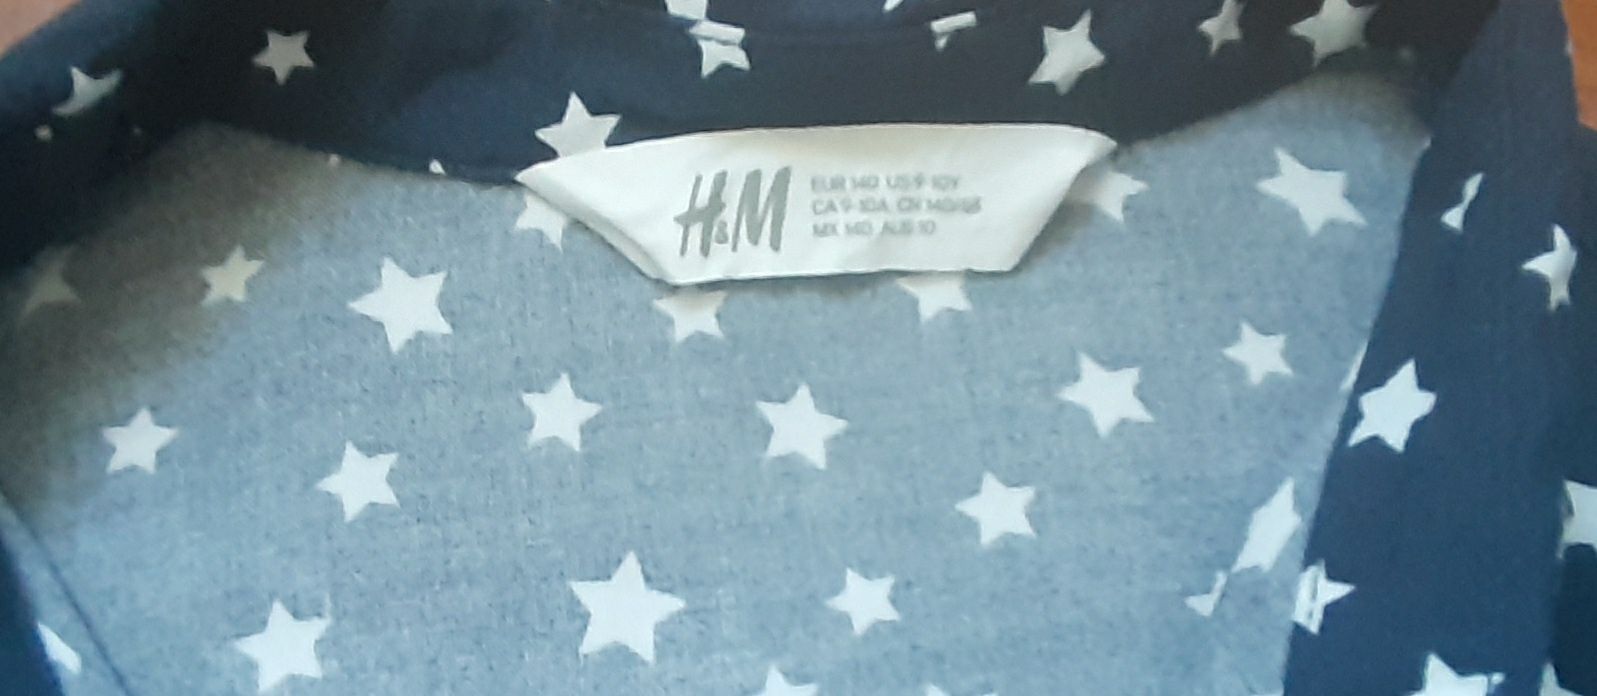 Rochite H&M,9-10 ani,ambele la 50 lei